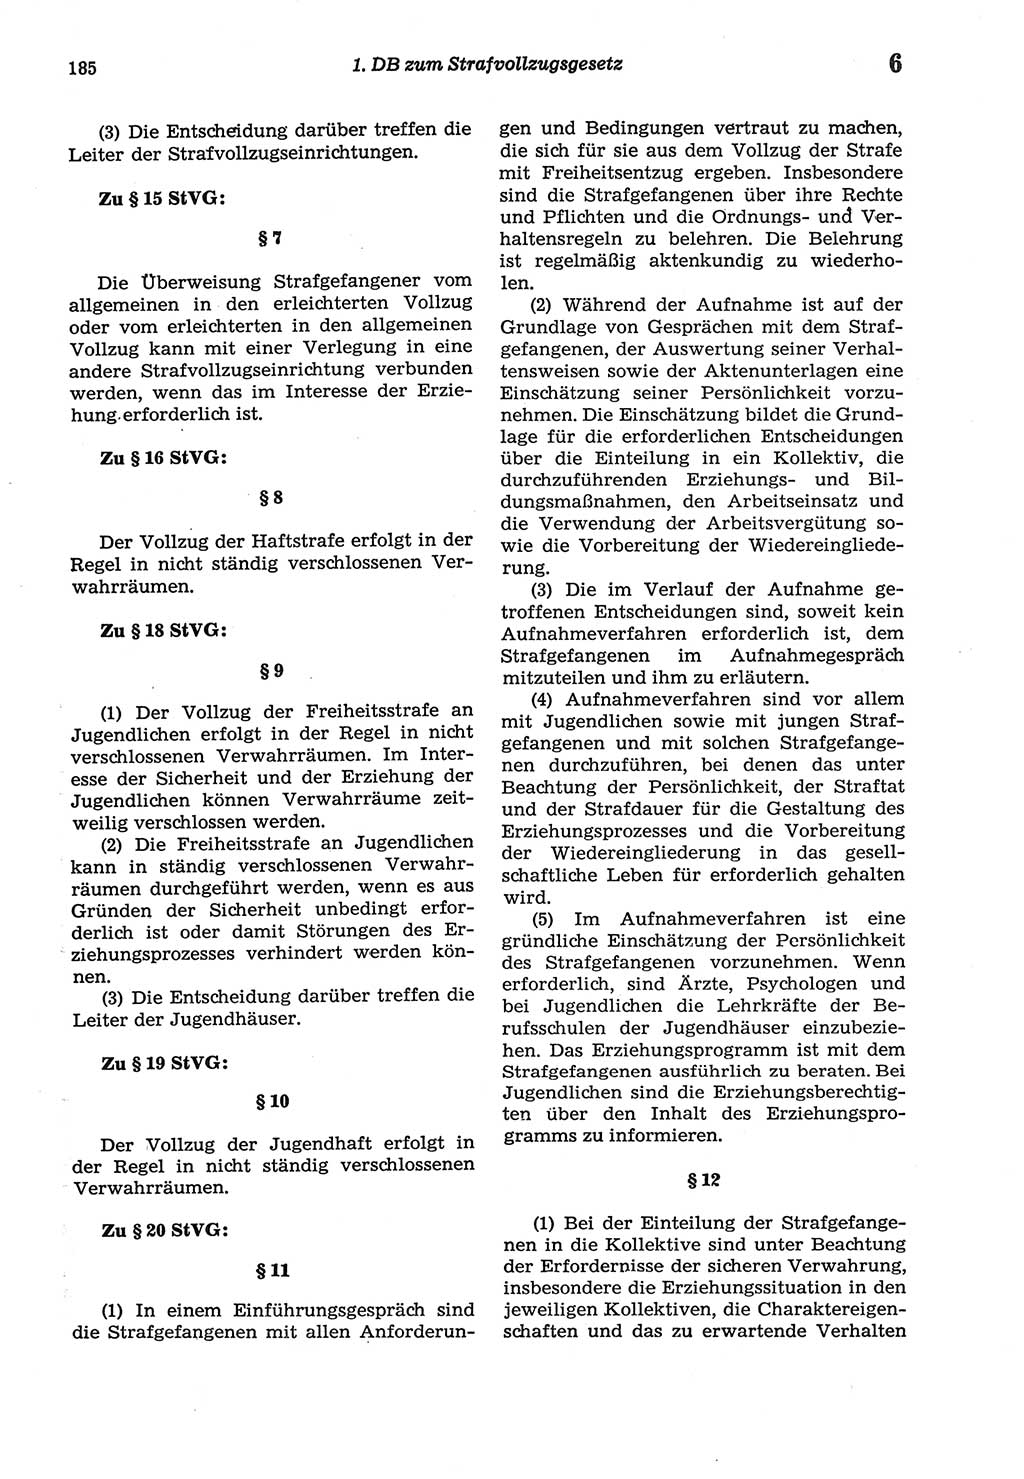 Strafprozeßordnung (StPO) der Deutschen Demokratischen Republik (DDR) sowie angrenzende Gesetze und Bestimmungen 1977, Seite 185 (StPO DDR Ges. Best. 1977, S. 185)